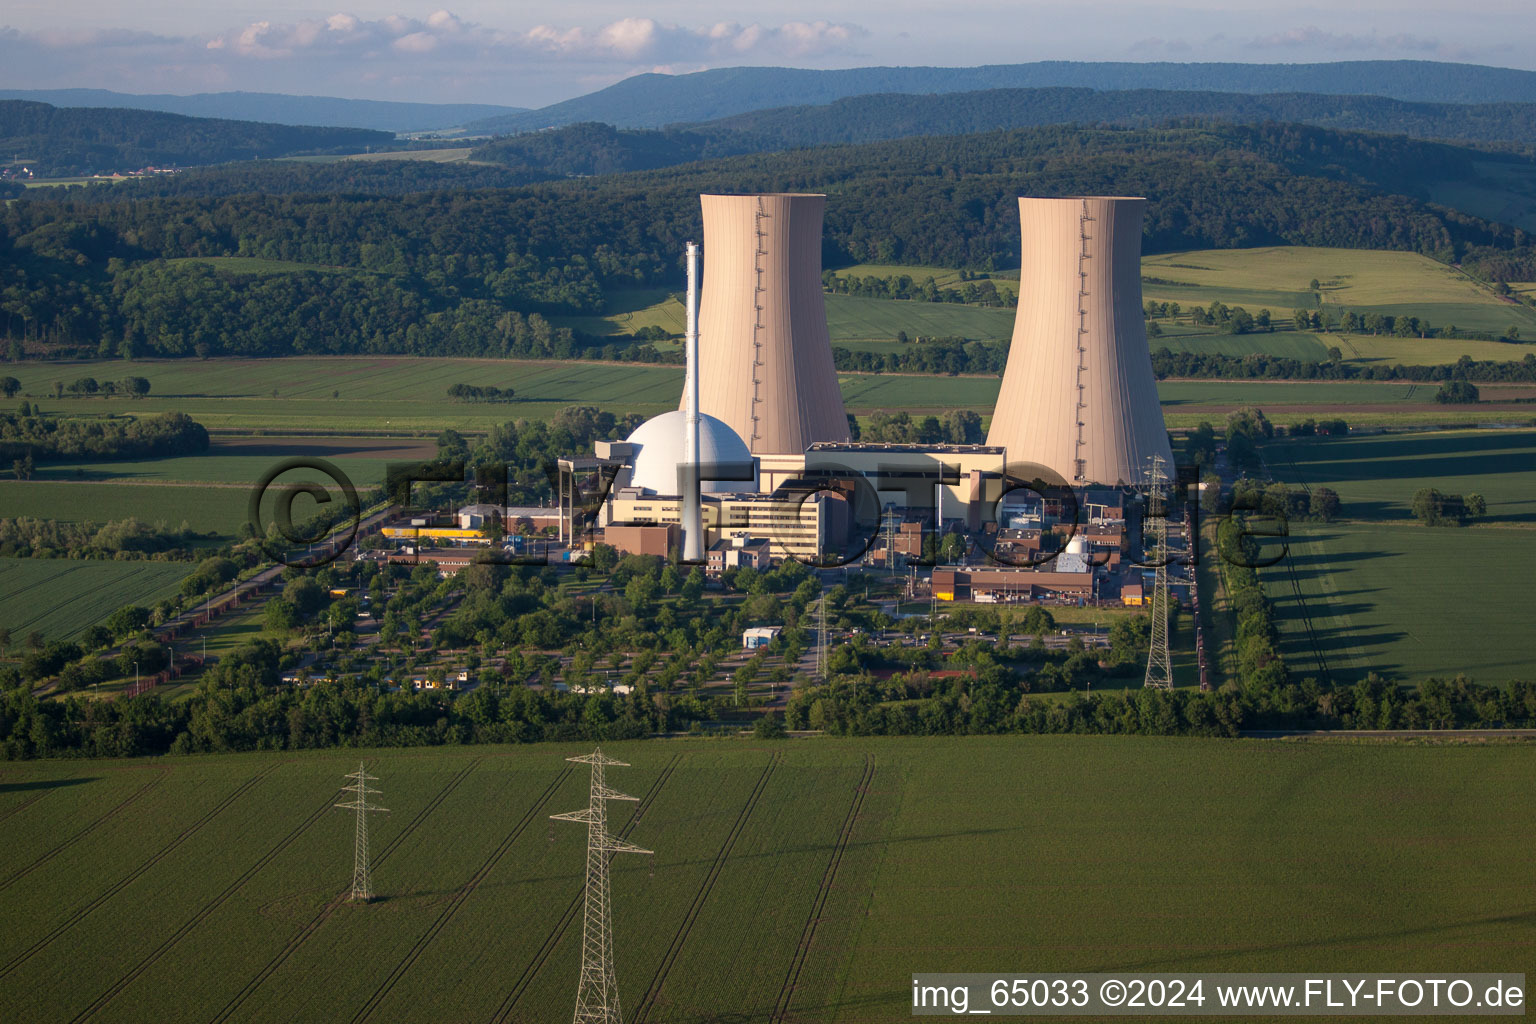 Reaktorblöcke, Kühlturmbauwerke und Anlagen des AKW - KKW Atomkraftwerk - Kernkraftwerk Kernkraftwerk Grohnde an der Weser in Emmerthal im Bundesland Niedersachsen, Deutschland von oben